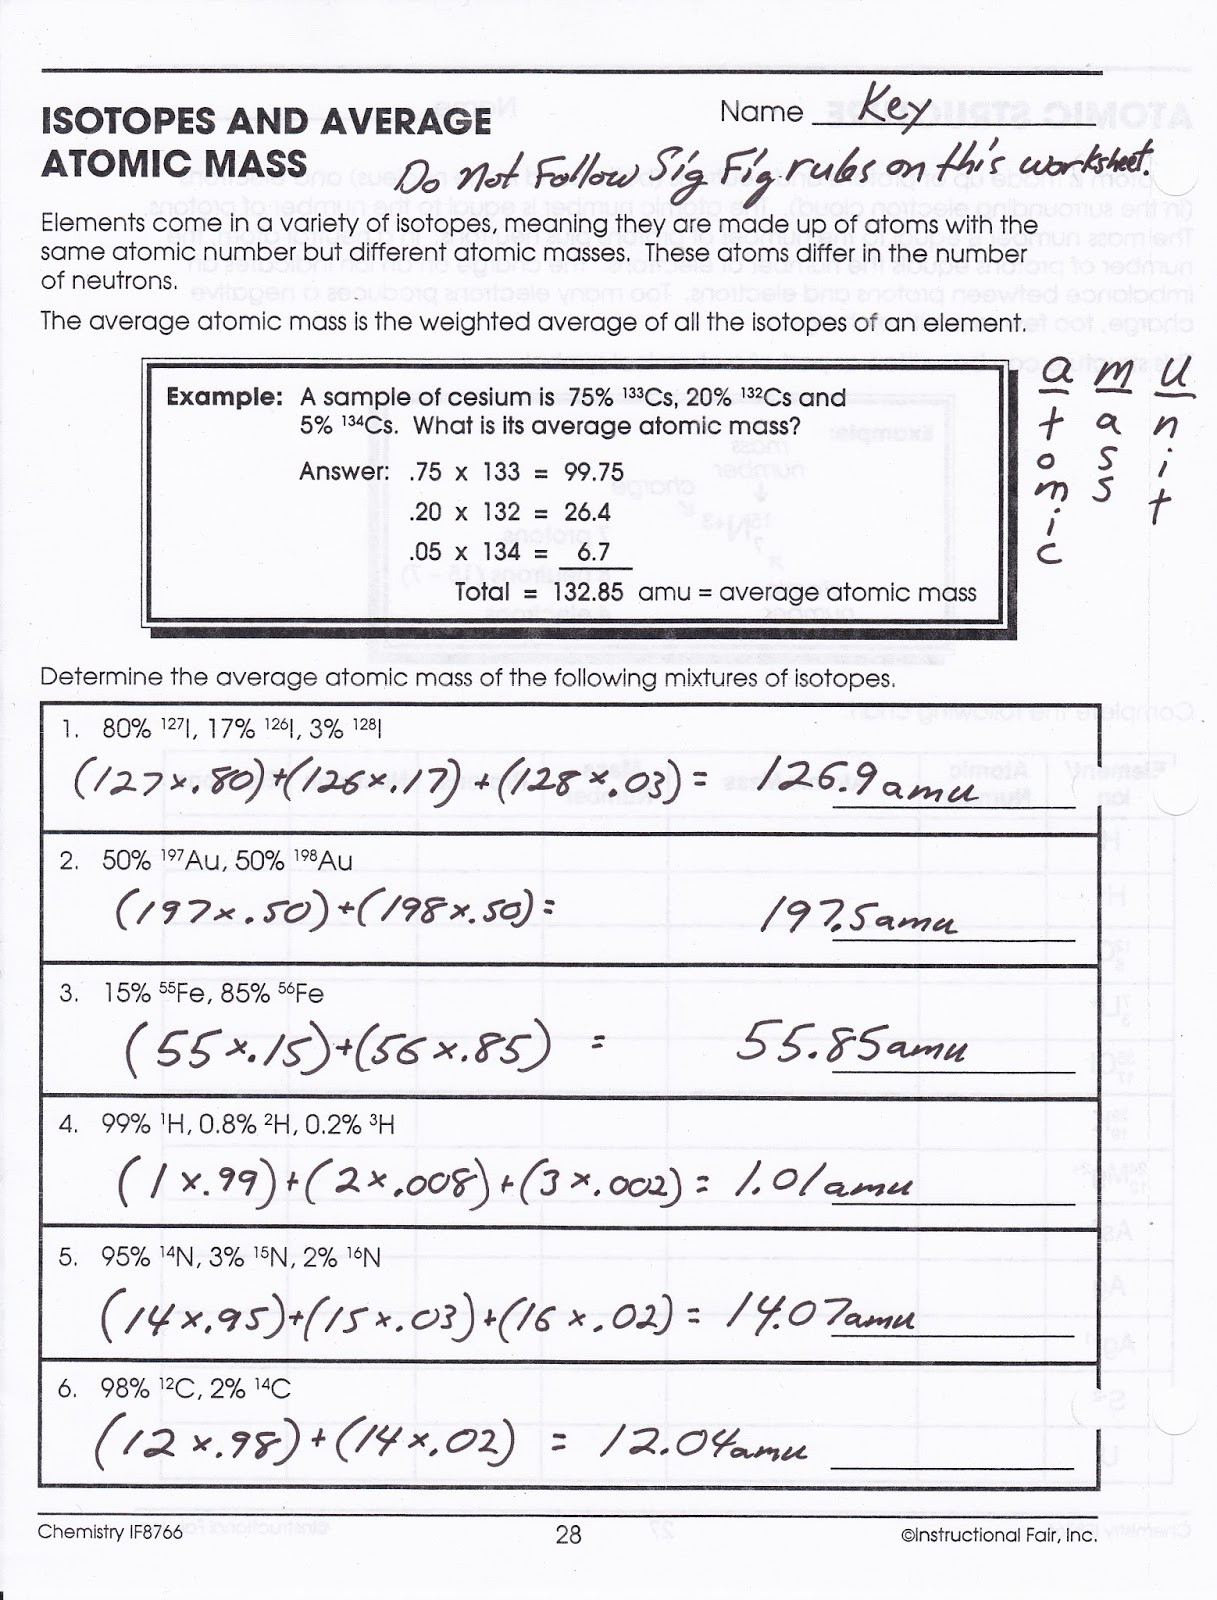 Average atomic Mass Worksheet 30 Calculating Average atomic Mass Worksheet Worksheet